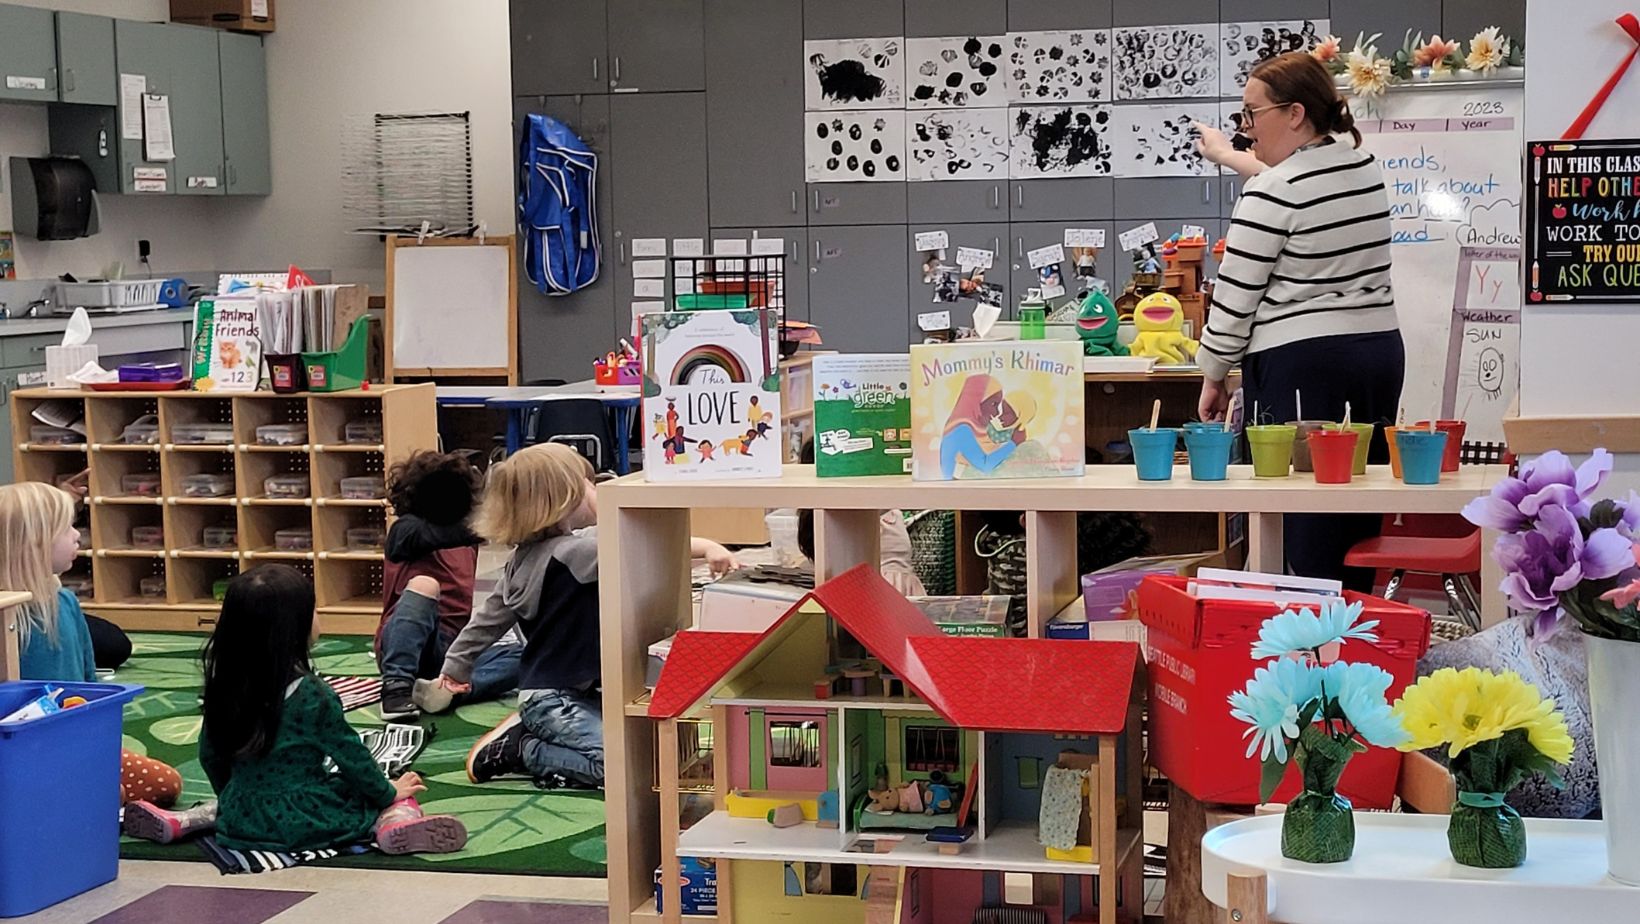 Seattle Preschool Program teacher leads children in classroom learning activity